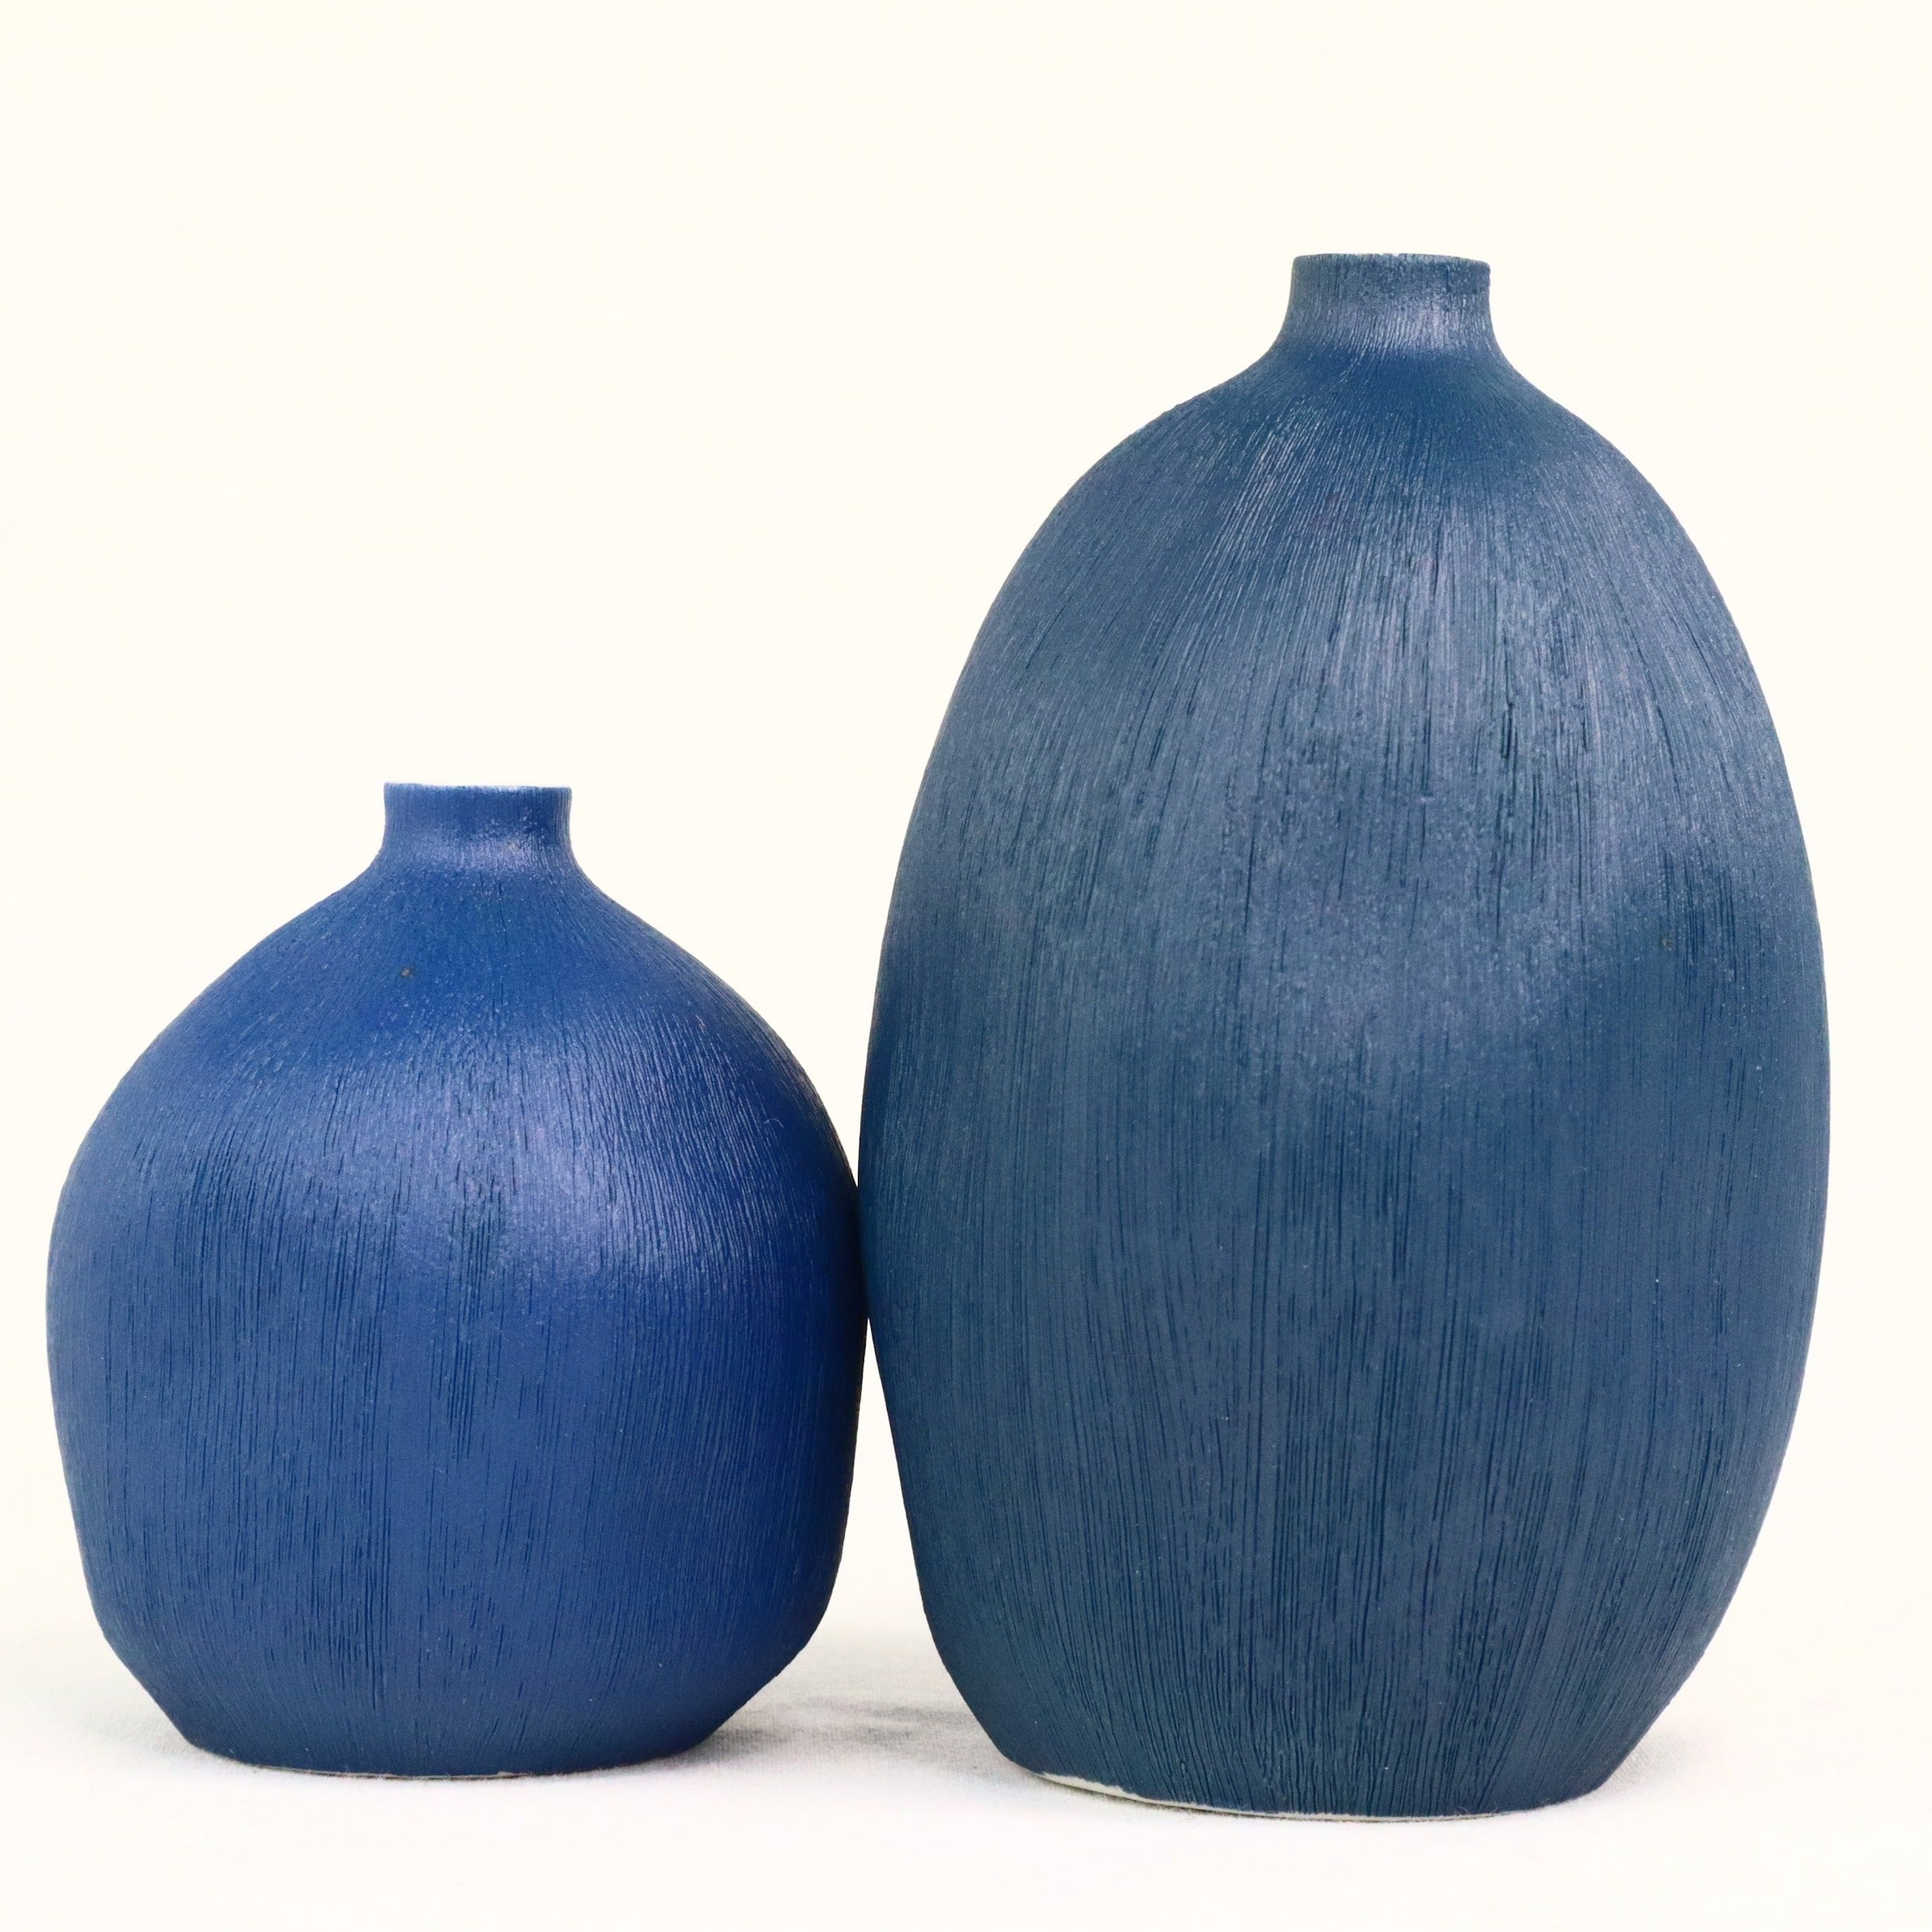 Cucumis Blue Vase